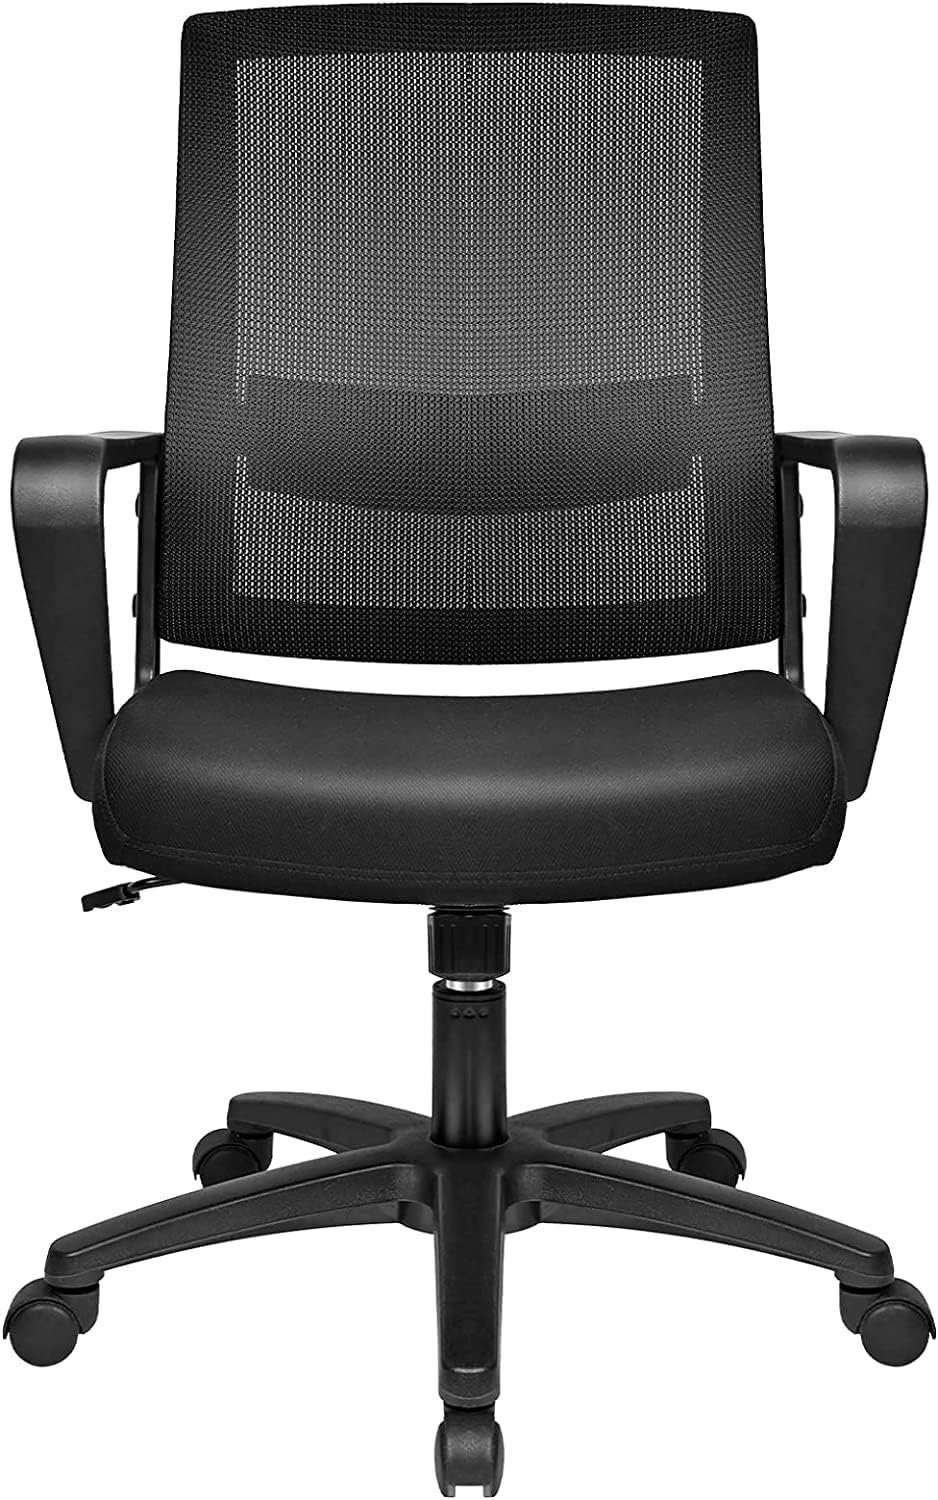 BASETBL Bürostuhl, ergonomischer Schreibtischstuhl Drehstuhl mit Netzbespannung Chefsesse